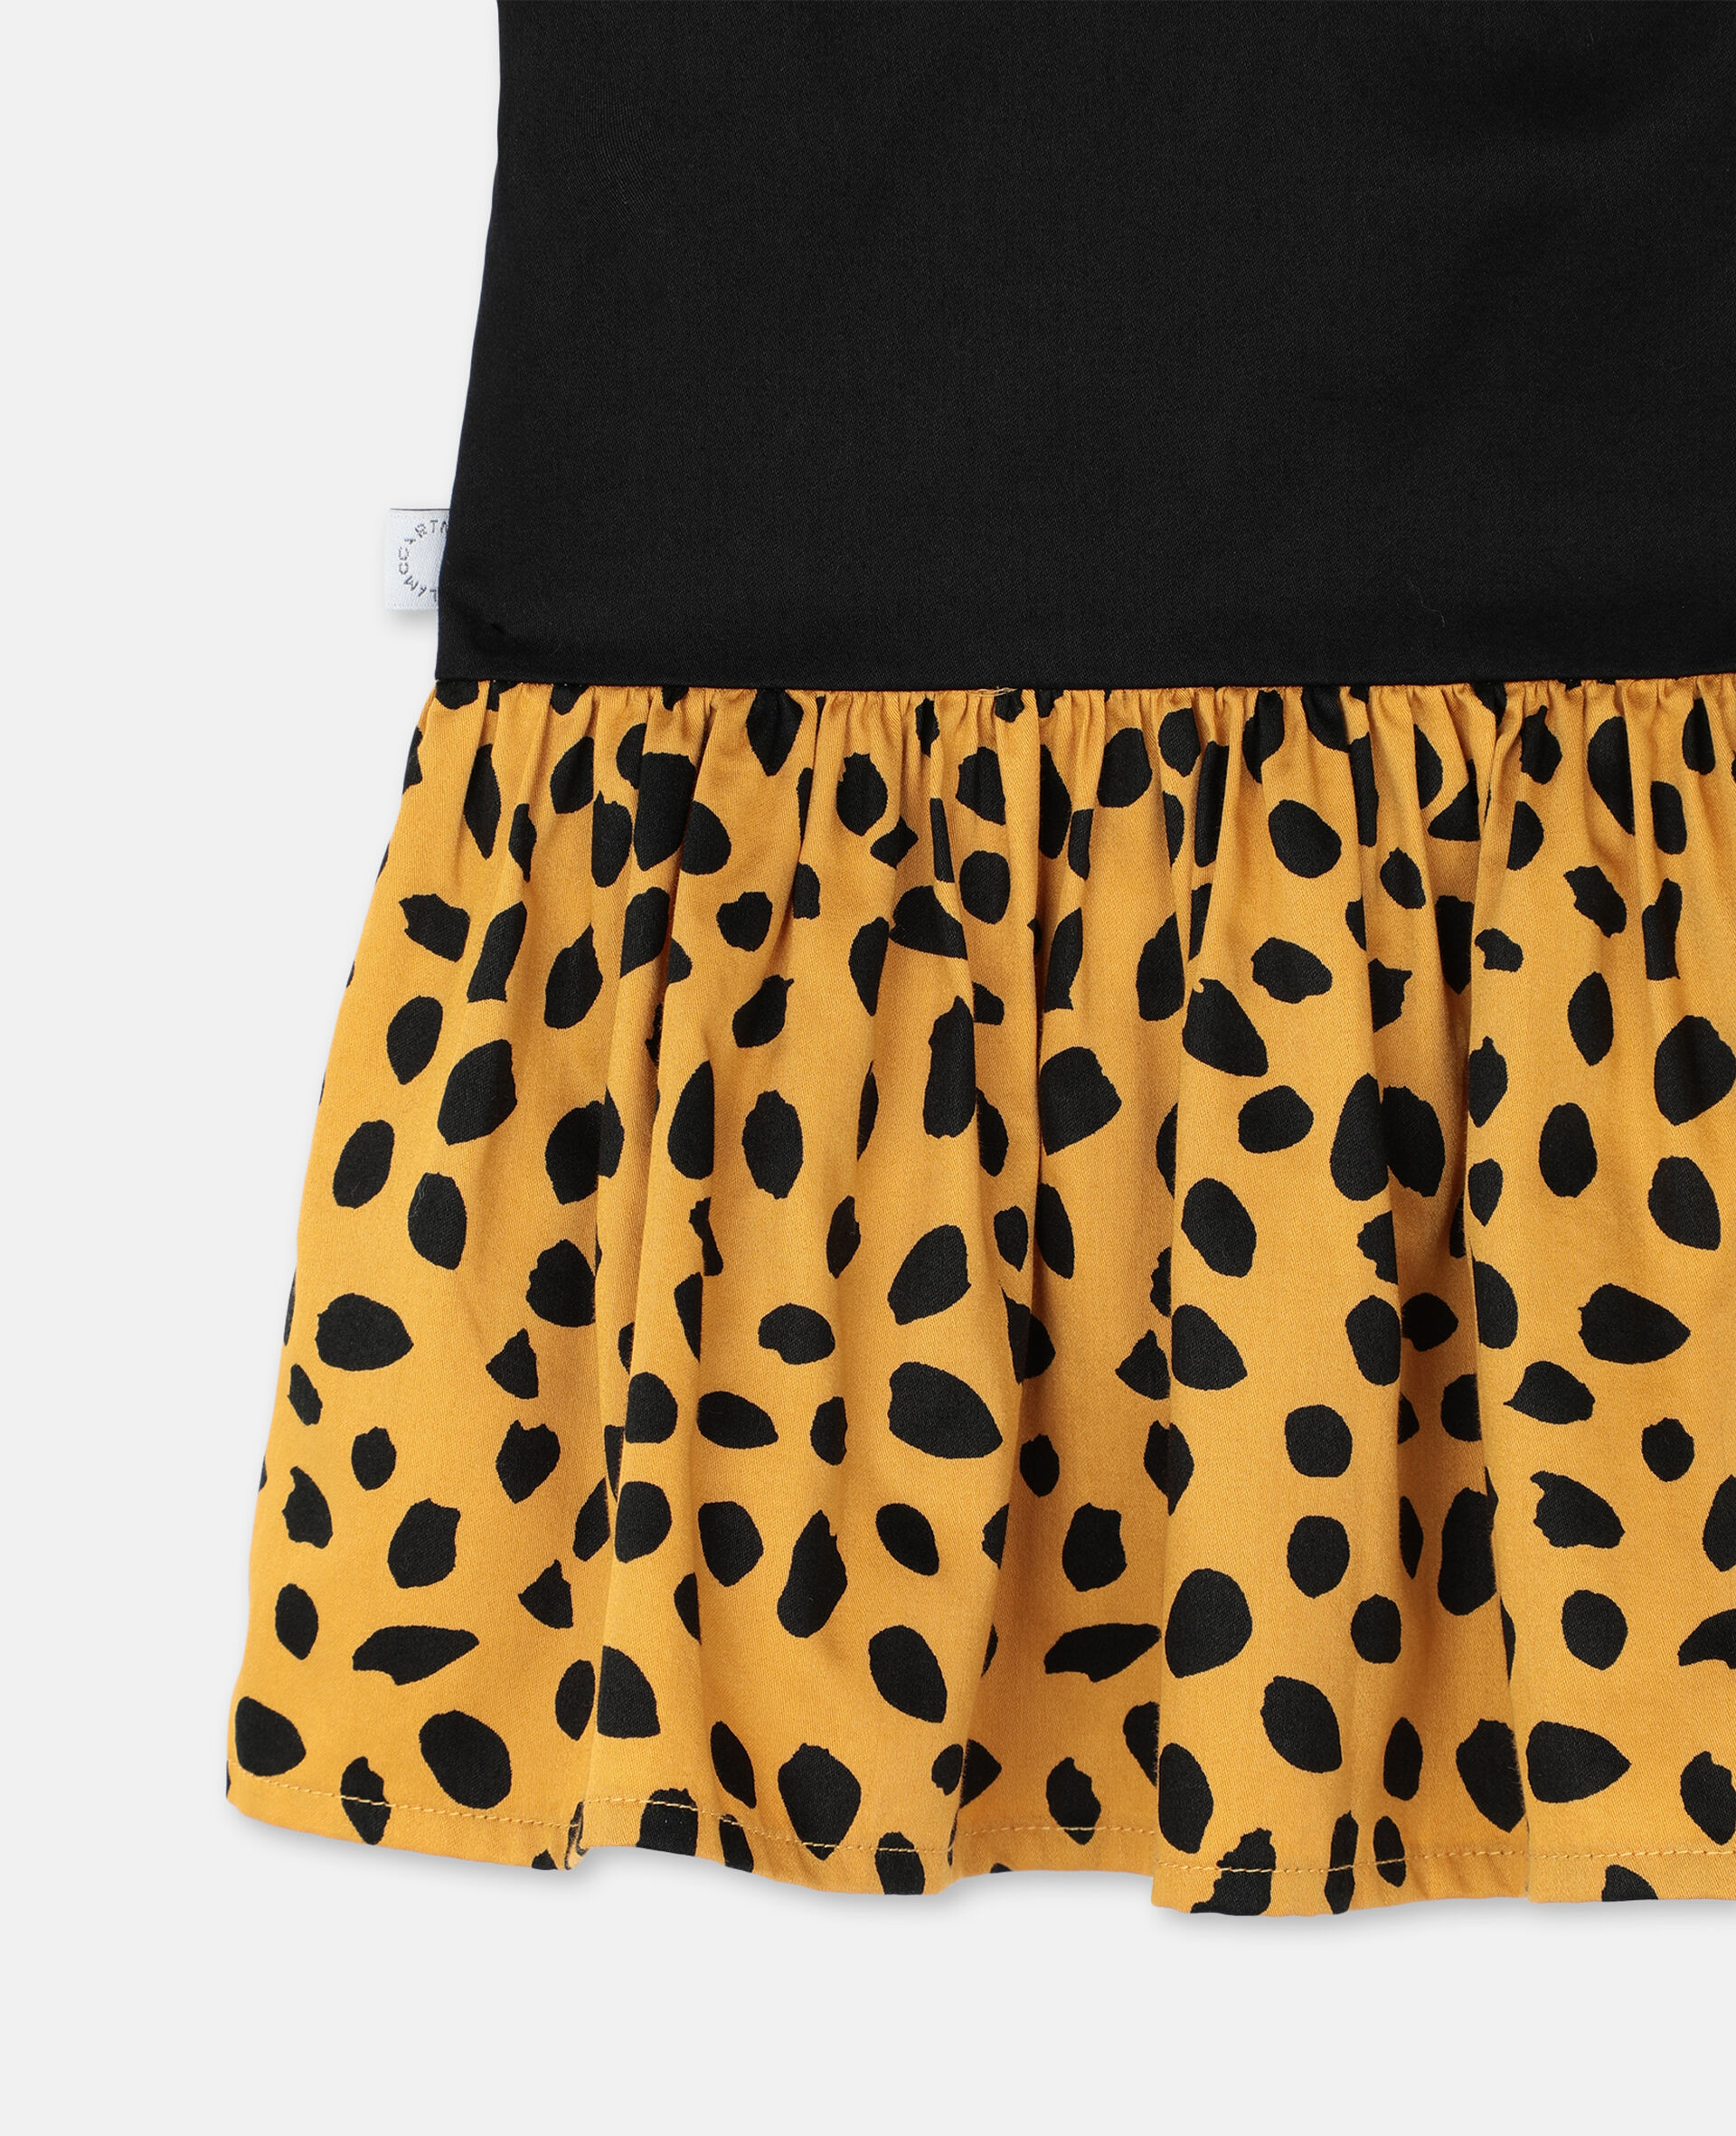 Cheetah Cotton Dress-Black-large image number 2